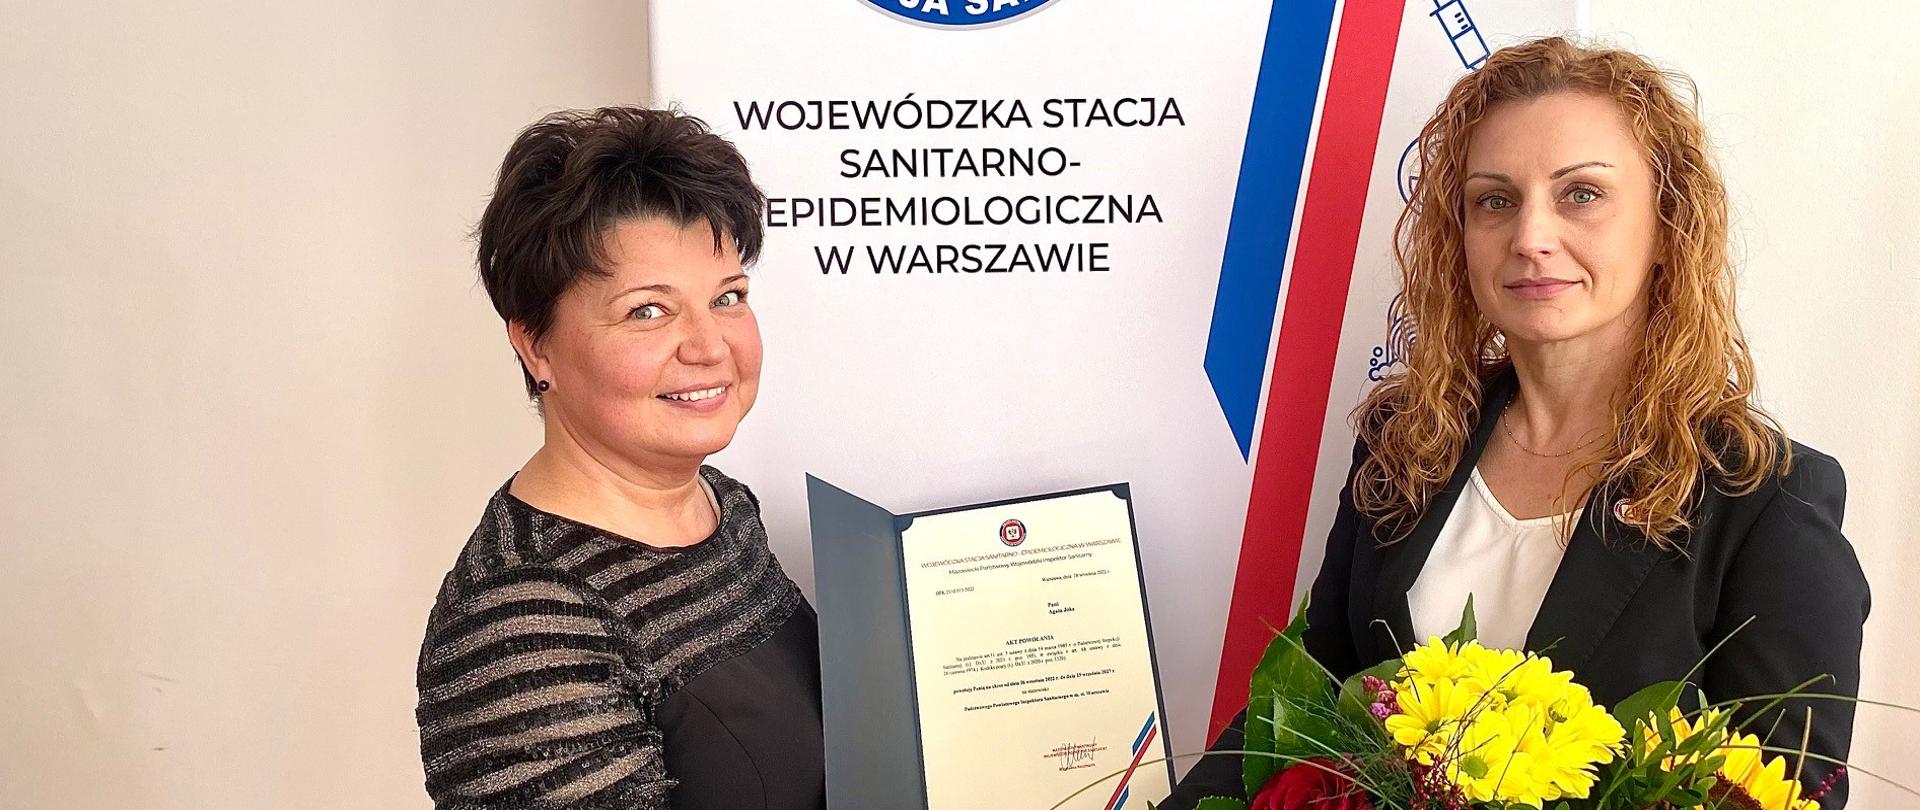 dwie kobiety na tle logo PIS, kobieta po lewej trzyma dokument z powołaniem na PPIS w m.st. Warszawie, kobieta po prawej trzyma bukiet kwiatów i prawą ręką ściska dłoń kobiety po lewej stronie, gratulując przyjętej nominacji